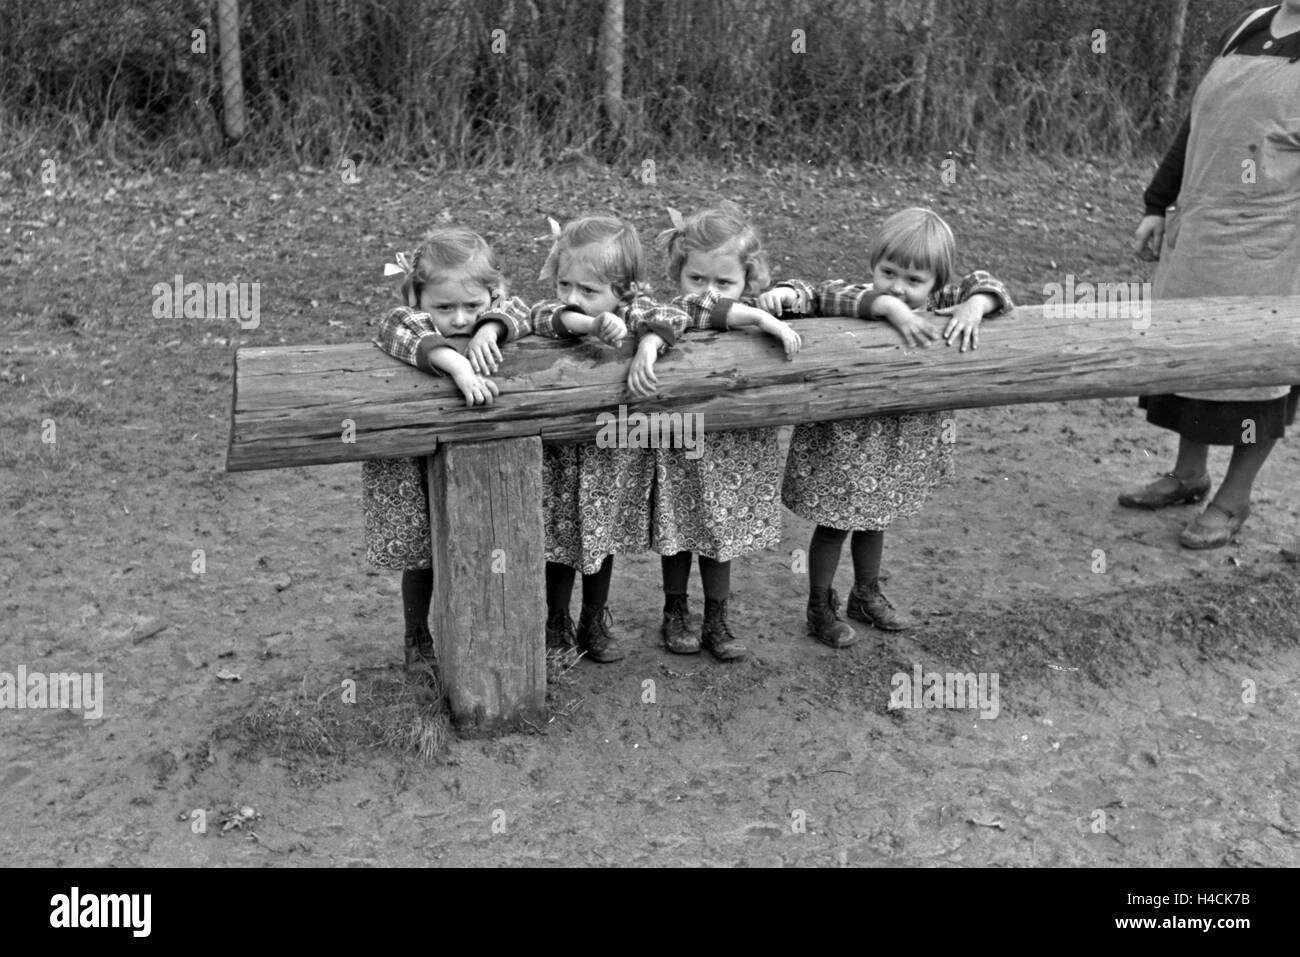 Die Knipser Vierlinge beim Spielen, Deutschland 1930er Jahre. The Knipser's quadruplet girls playing at the garden, Germany 1930s Stock Photo